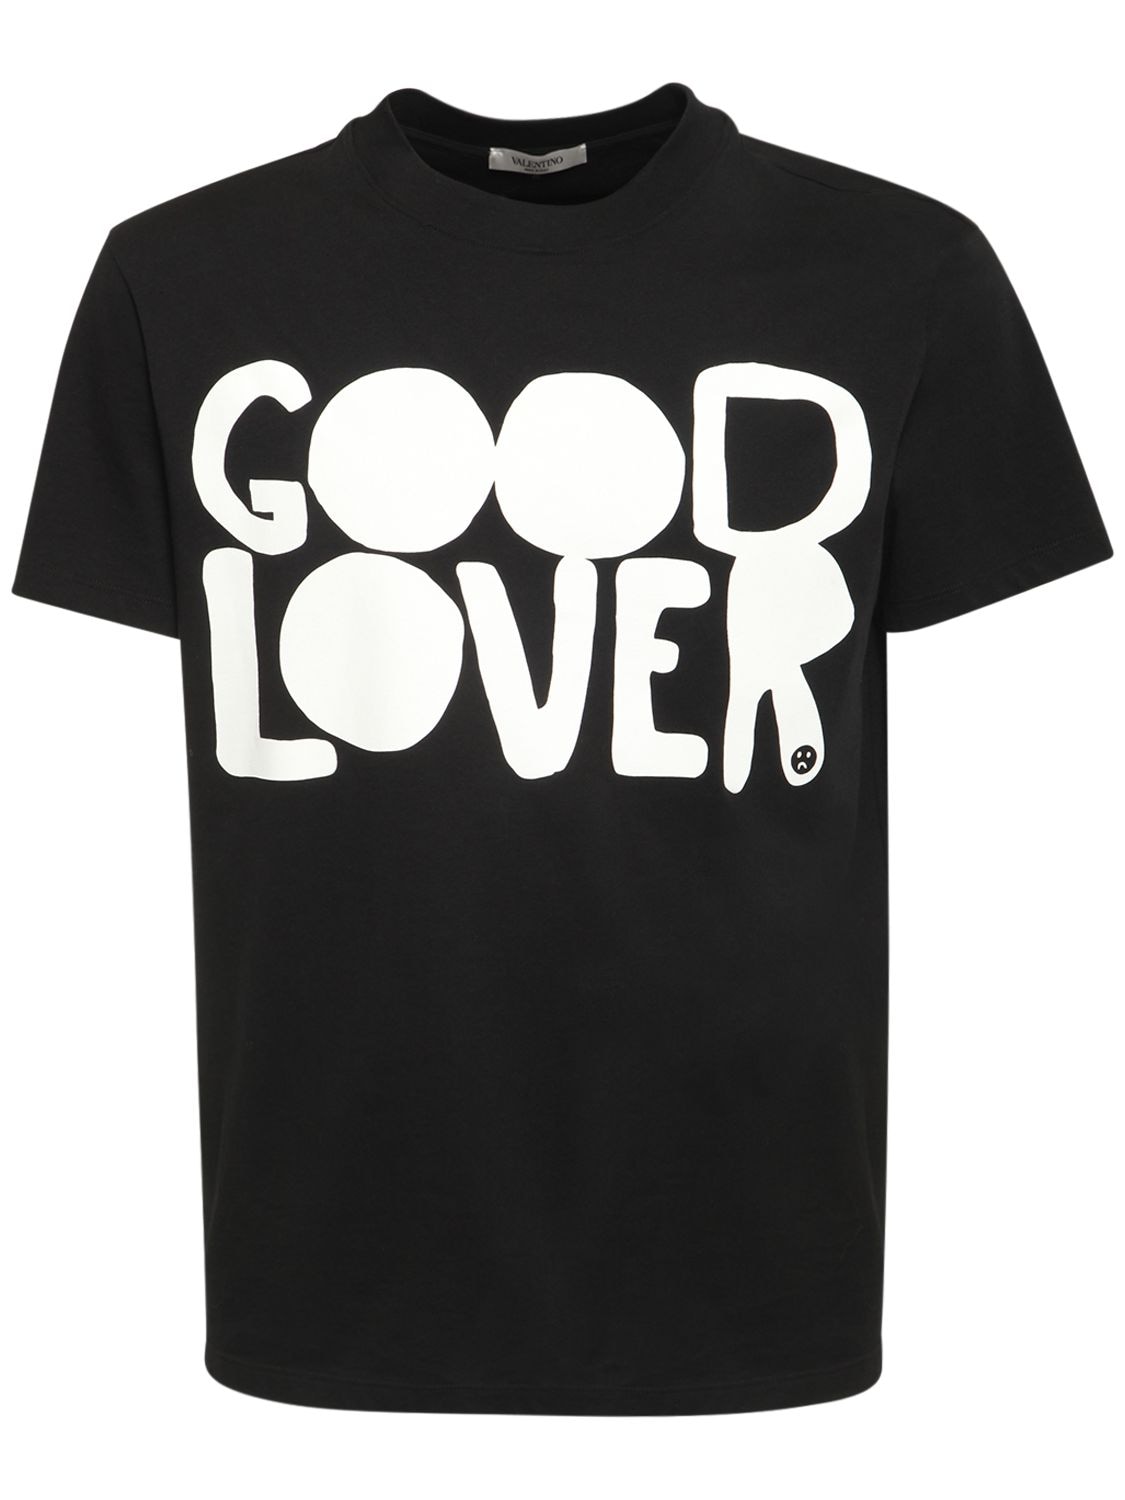 Valentino - Good lover print cotton t-shirt - Black | Luisaviaroma